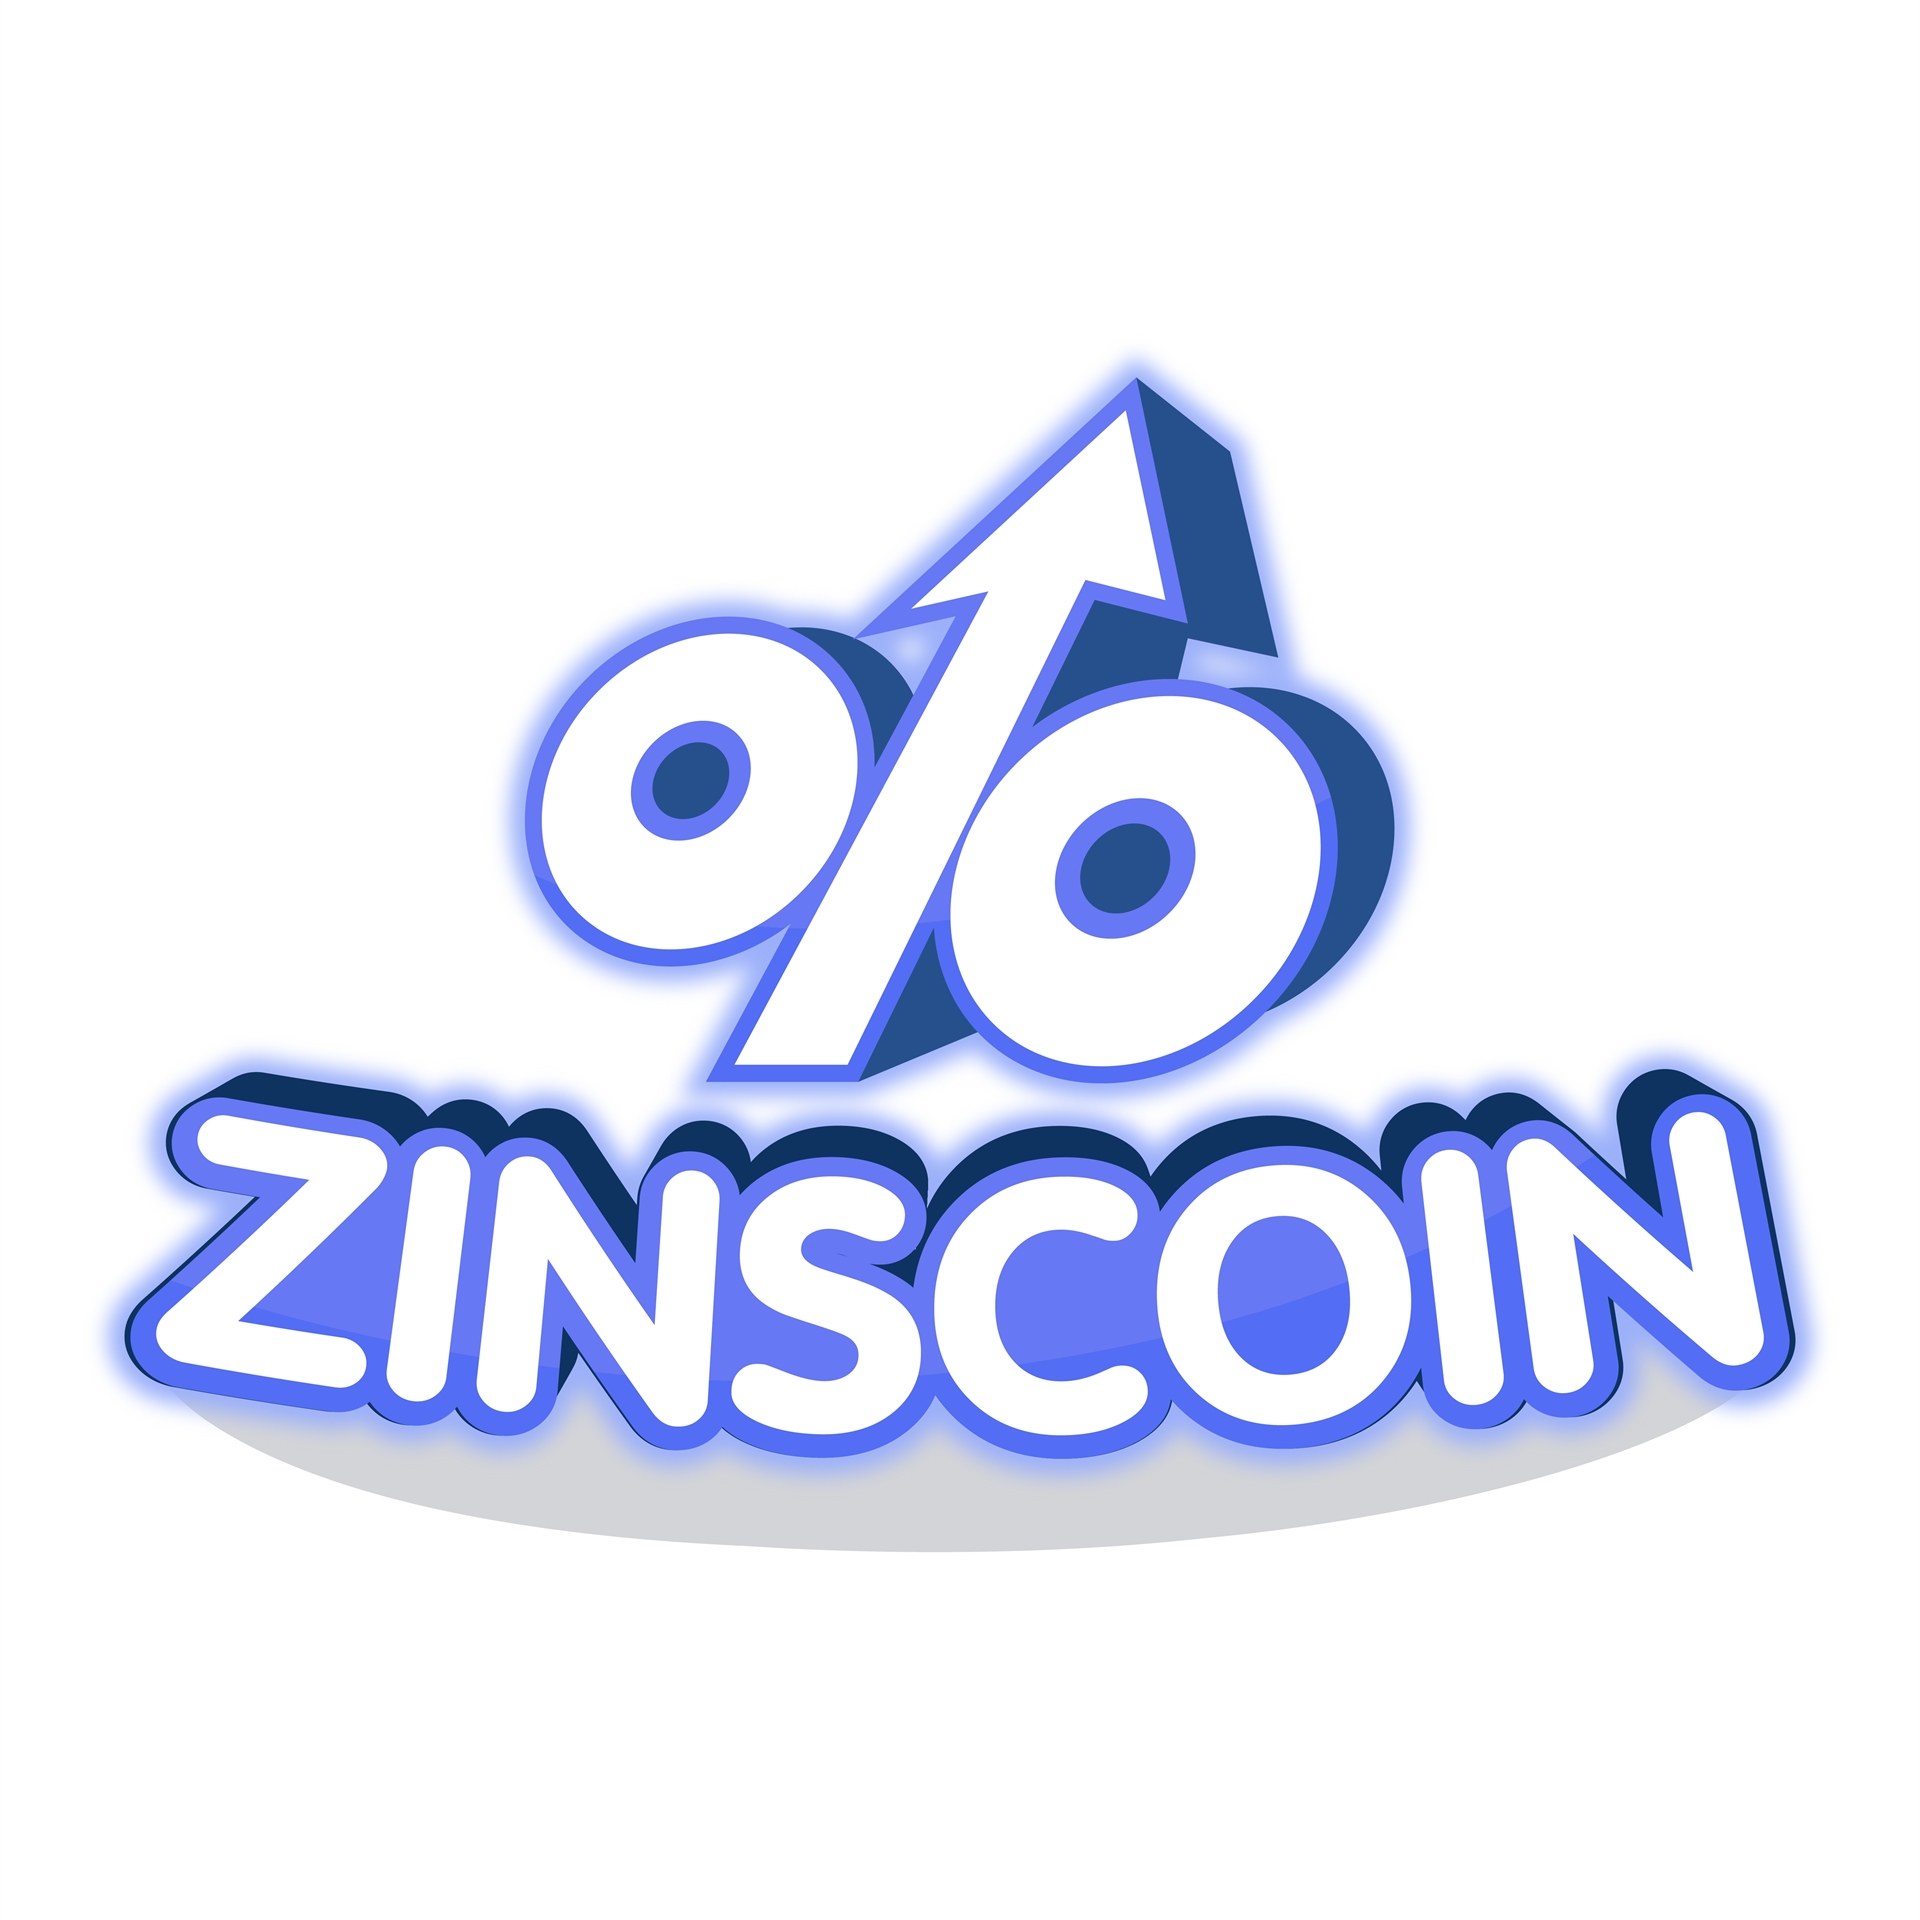 Zinscoin logo